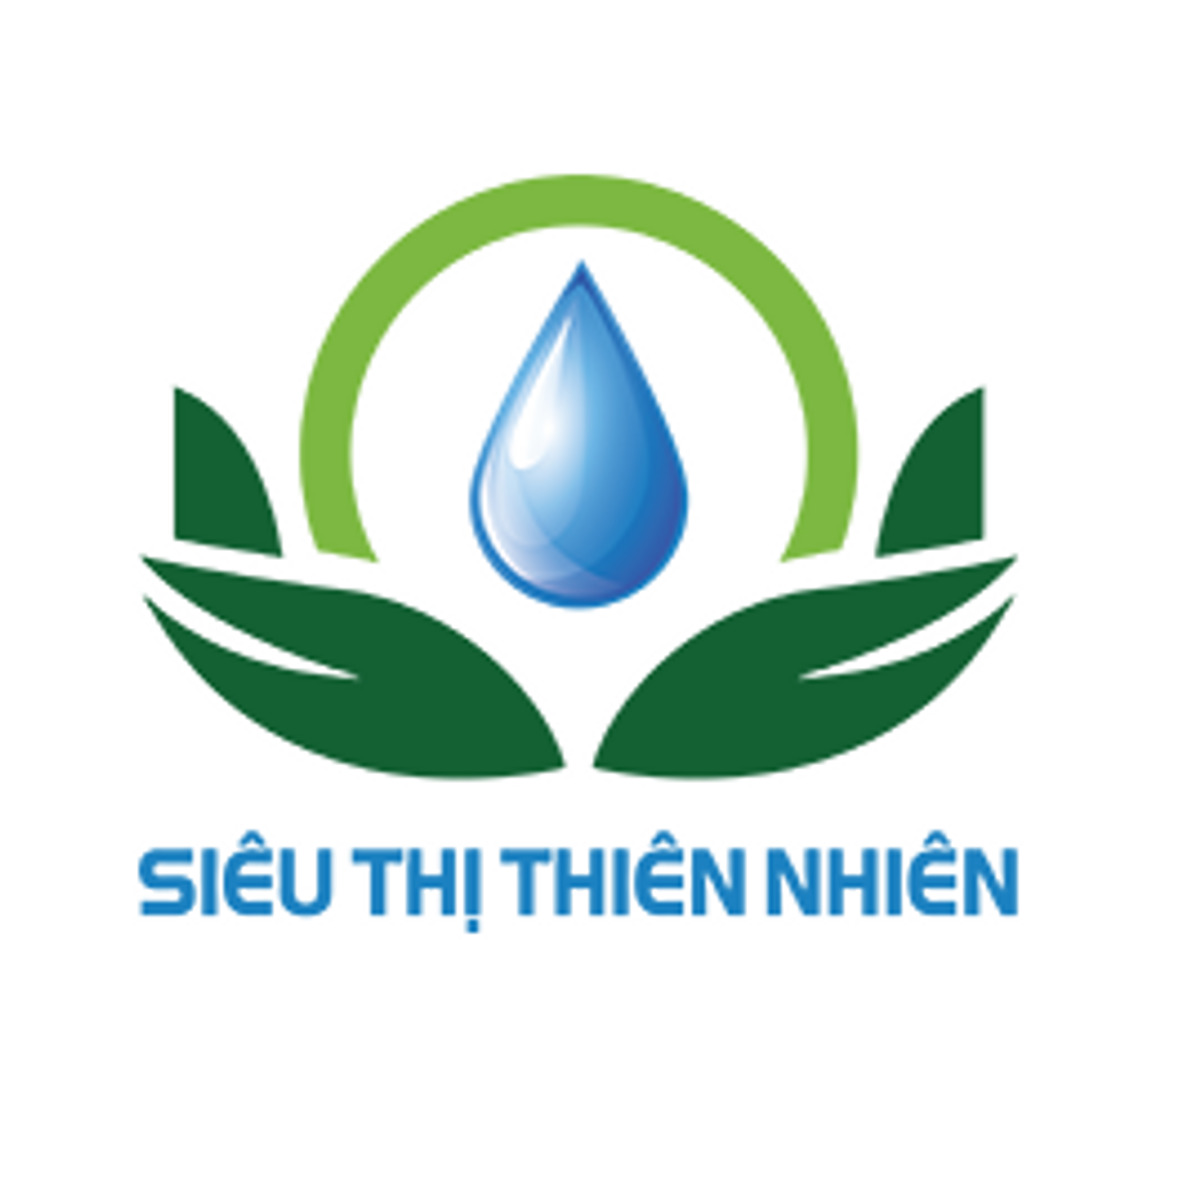 Siêu Thị Thiên Nhiên logo